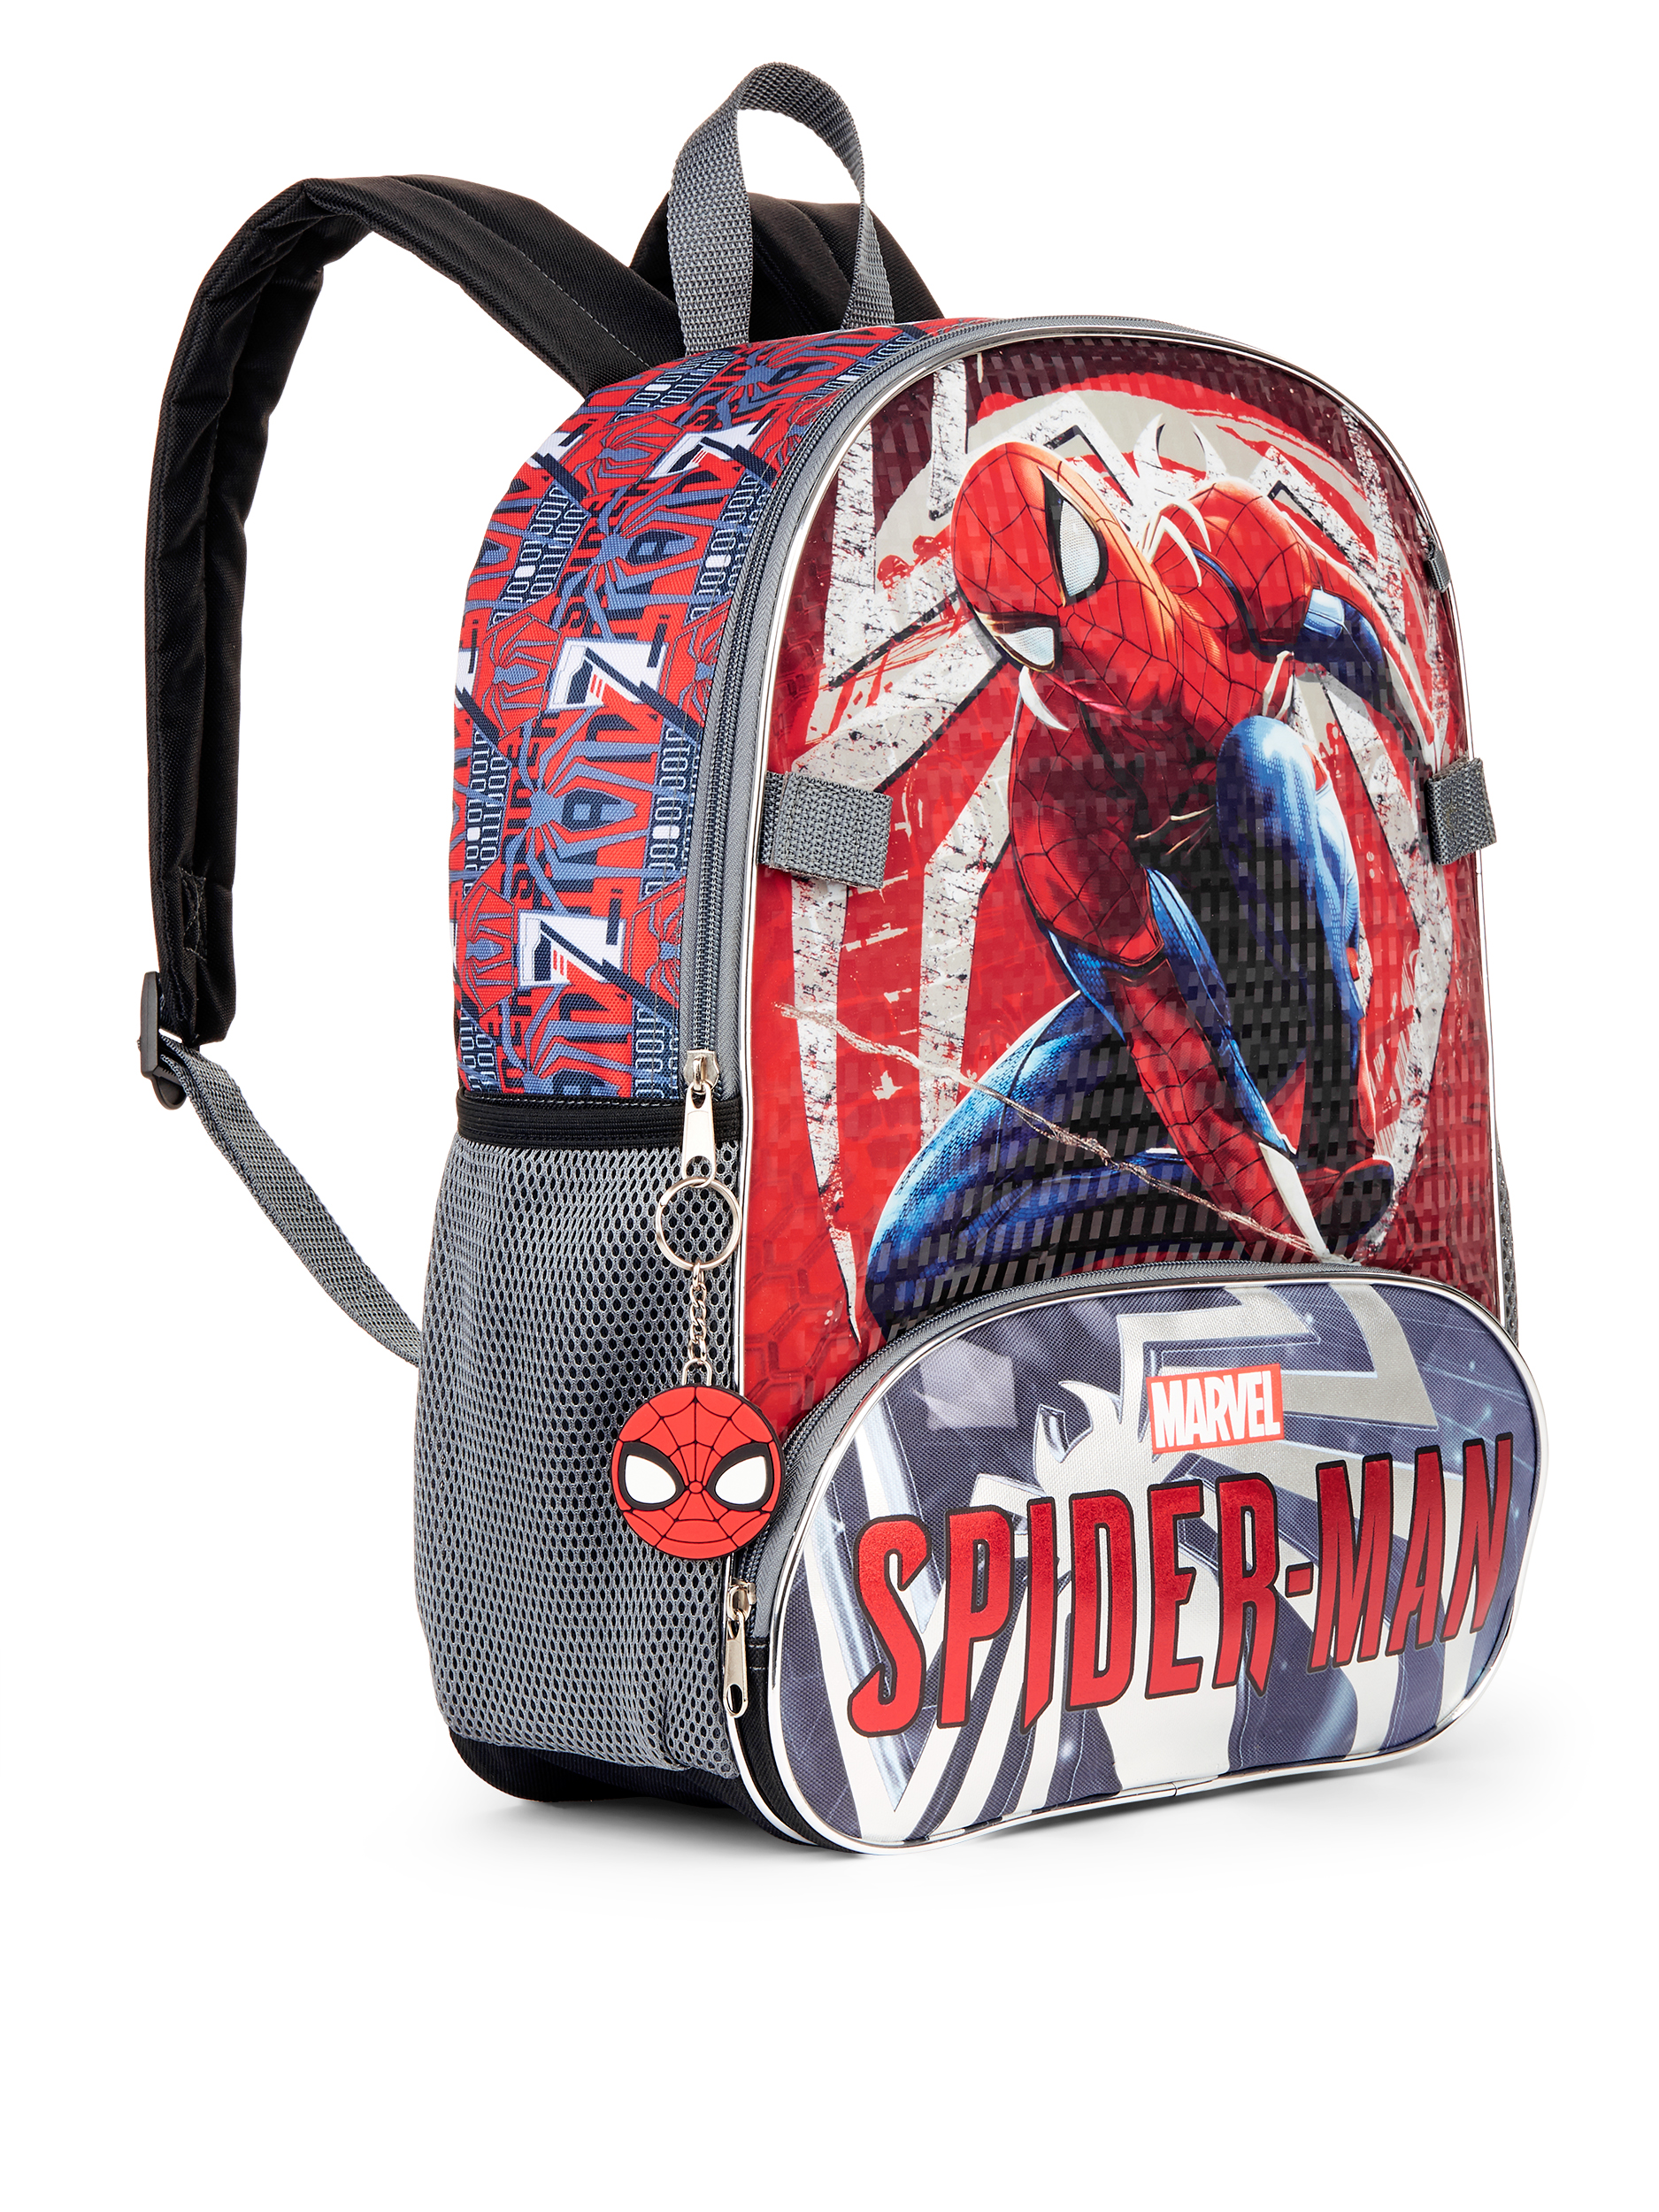 Spider-Man 5-Piece Backpack Set - image 3 of 5